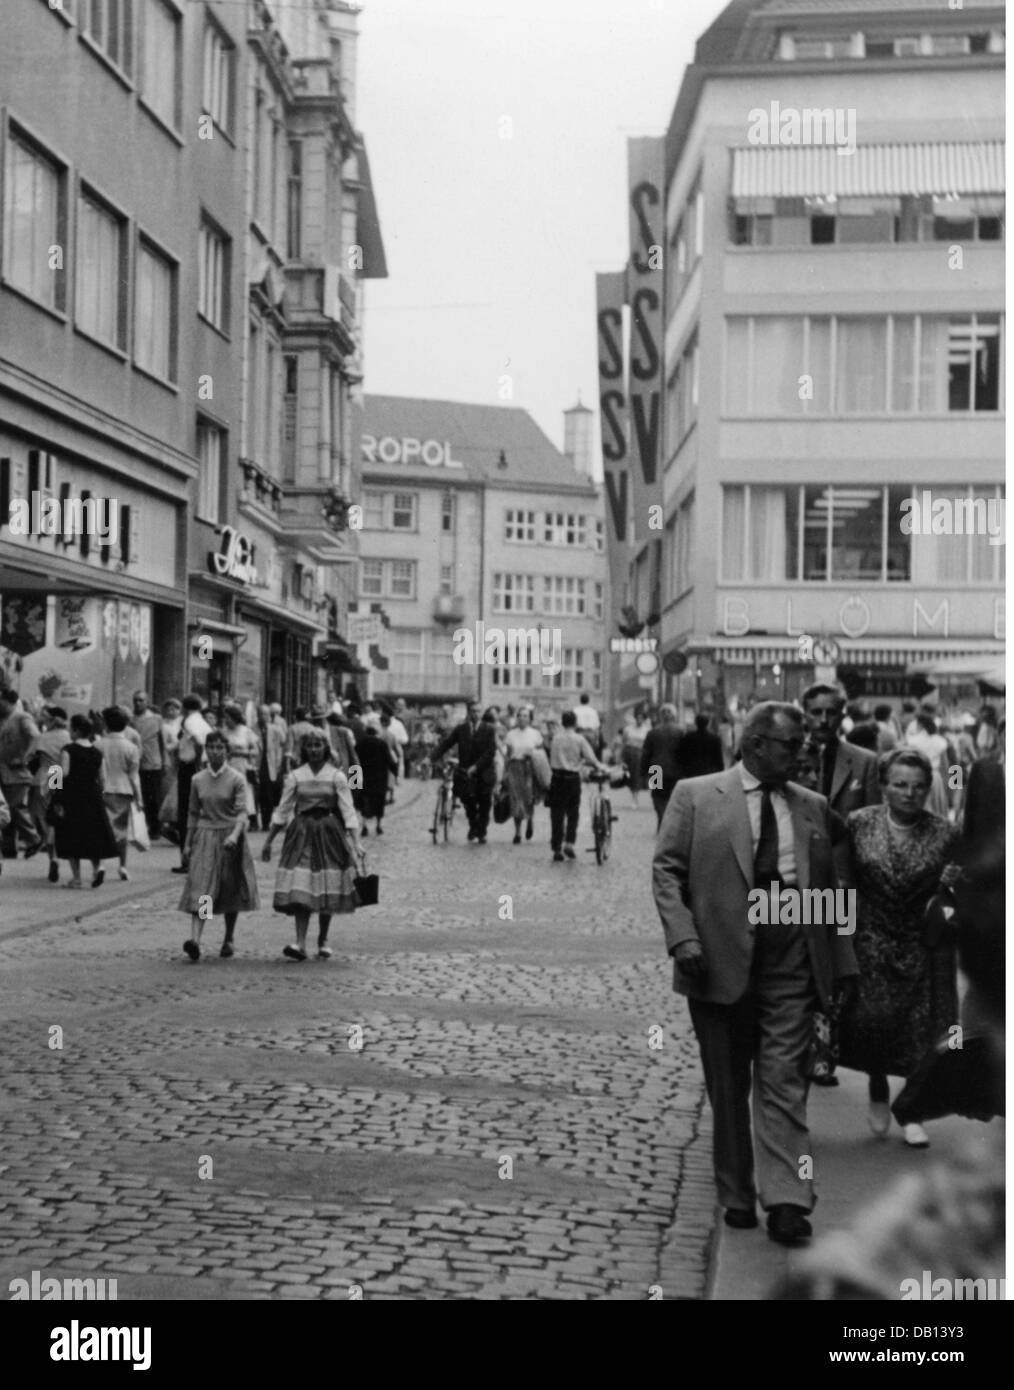 Commercio, negozi, città interna tedesca al momento della vendita di autorizzazione estiva, anni '50, diritti aggiuntivi-clearences-non disponibile Foto Stock